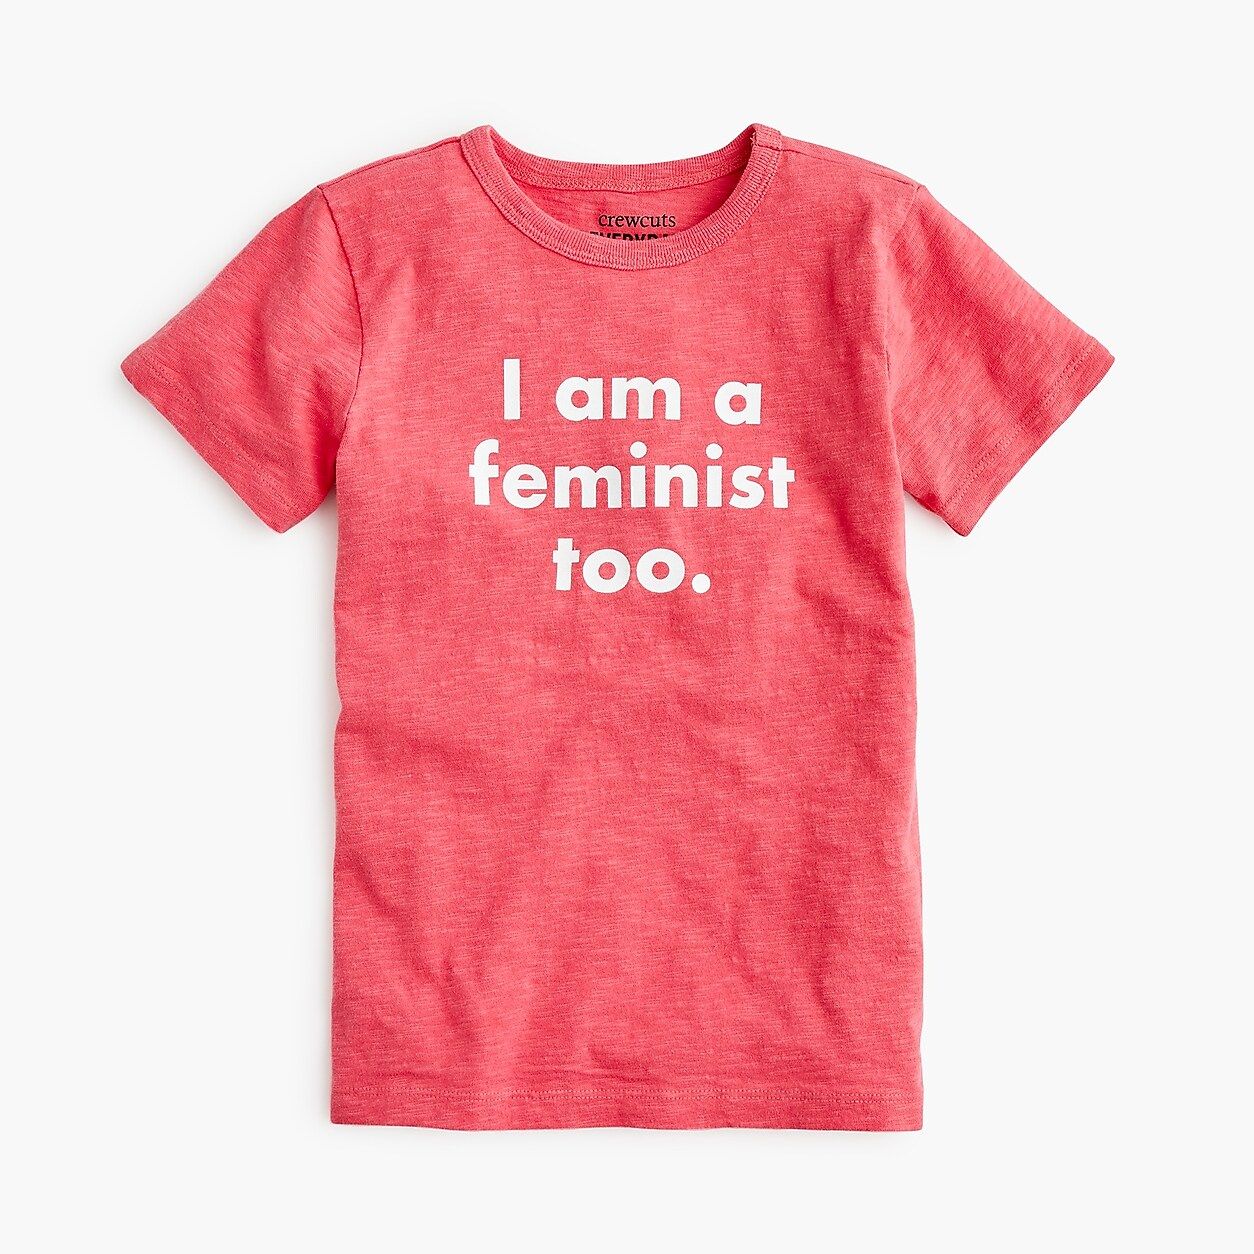 Boys' prinkshop x crewcuts "feminist" T-shirt | J.Crew US